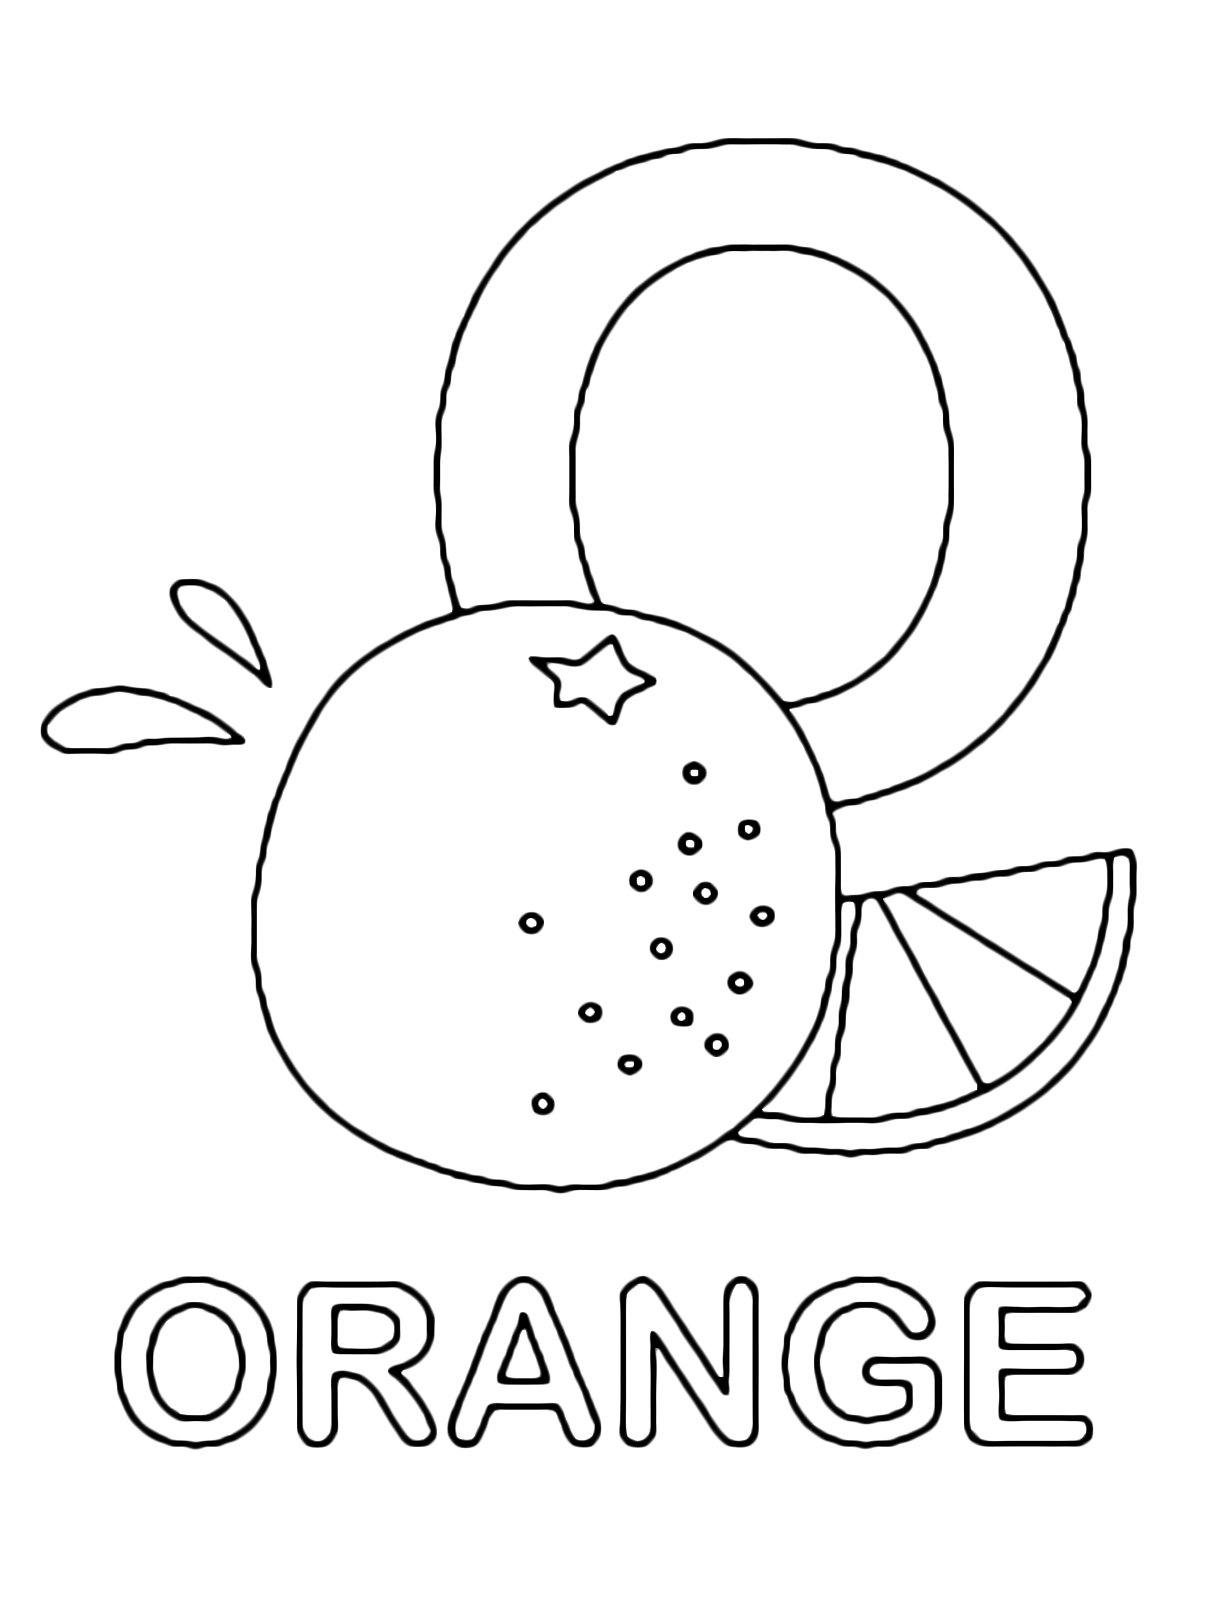 Lettere e numeri - Lettera O in stampatello di orange (arancia) in Inglese